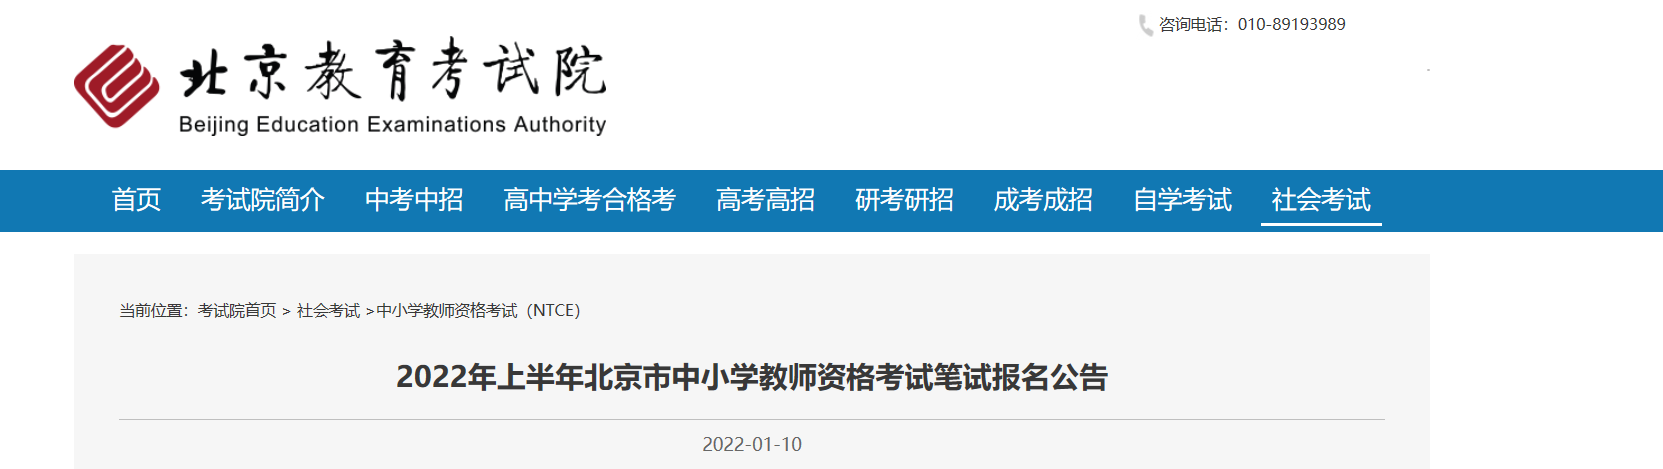 2022年上半年北京中小学教师资格笔试考试报名时间、条件及入口【1月24日-1月27日】